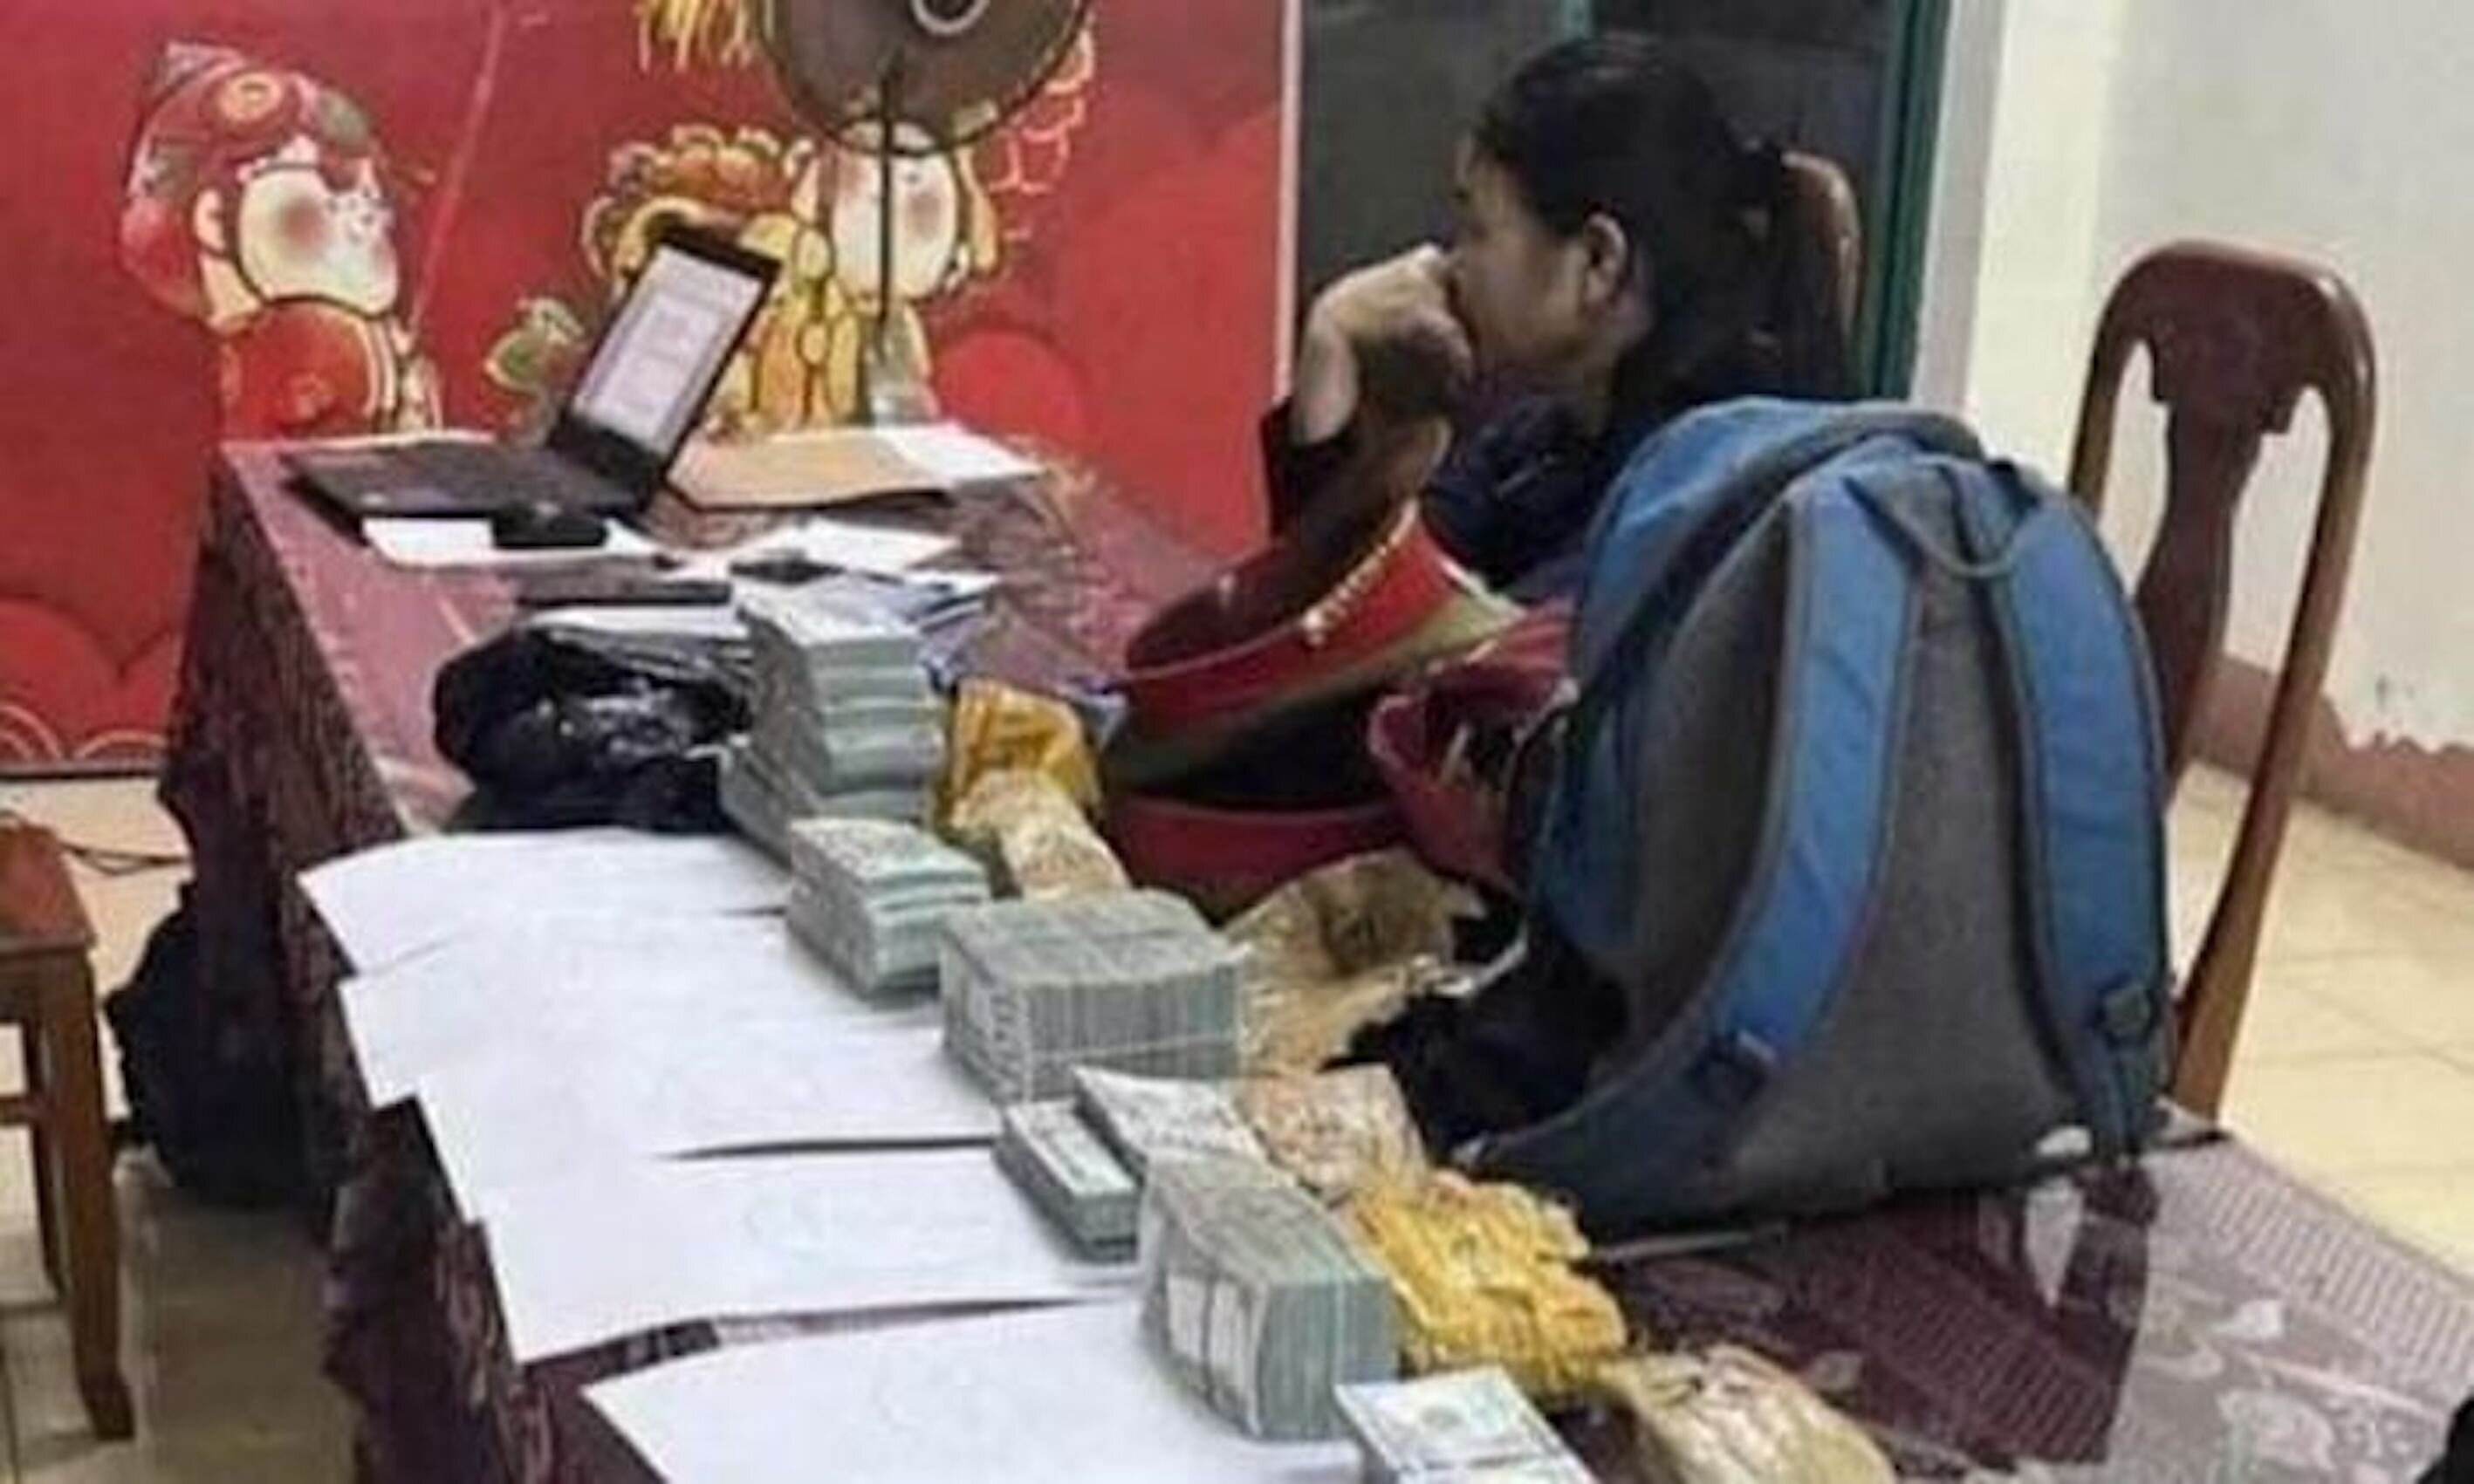 Nguyễn Thị Loan cùng số ngoại tệ bị phát hiện